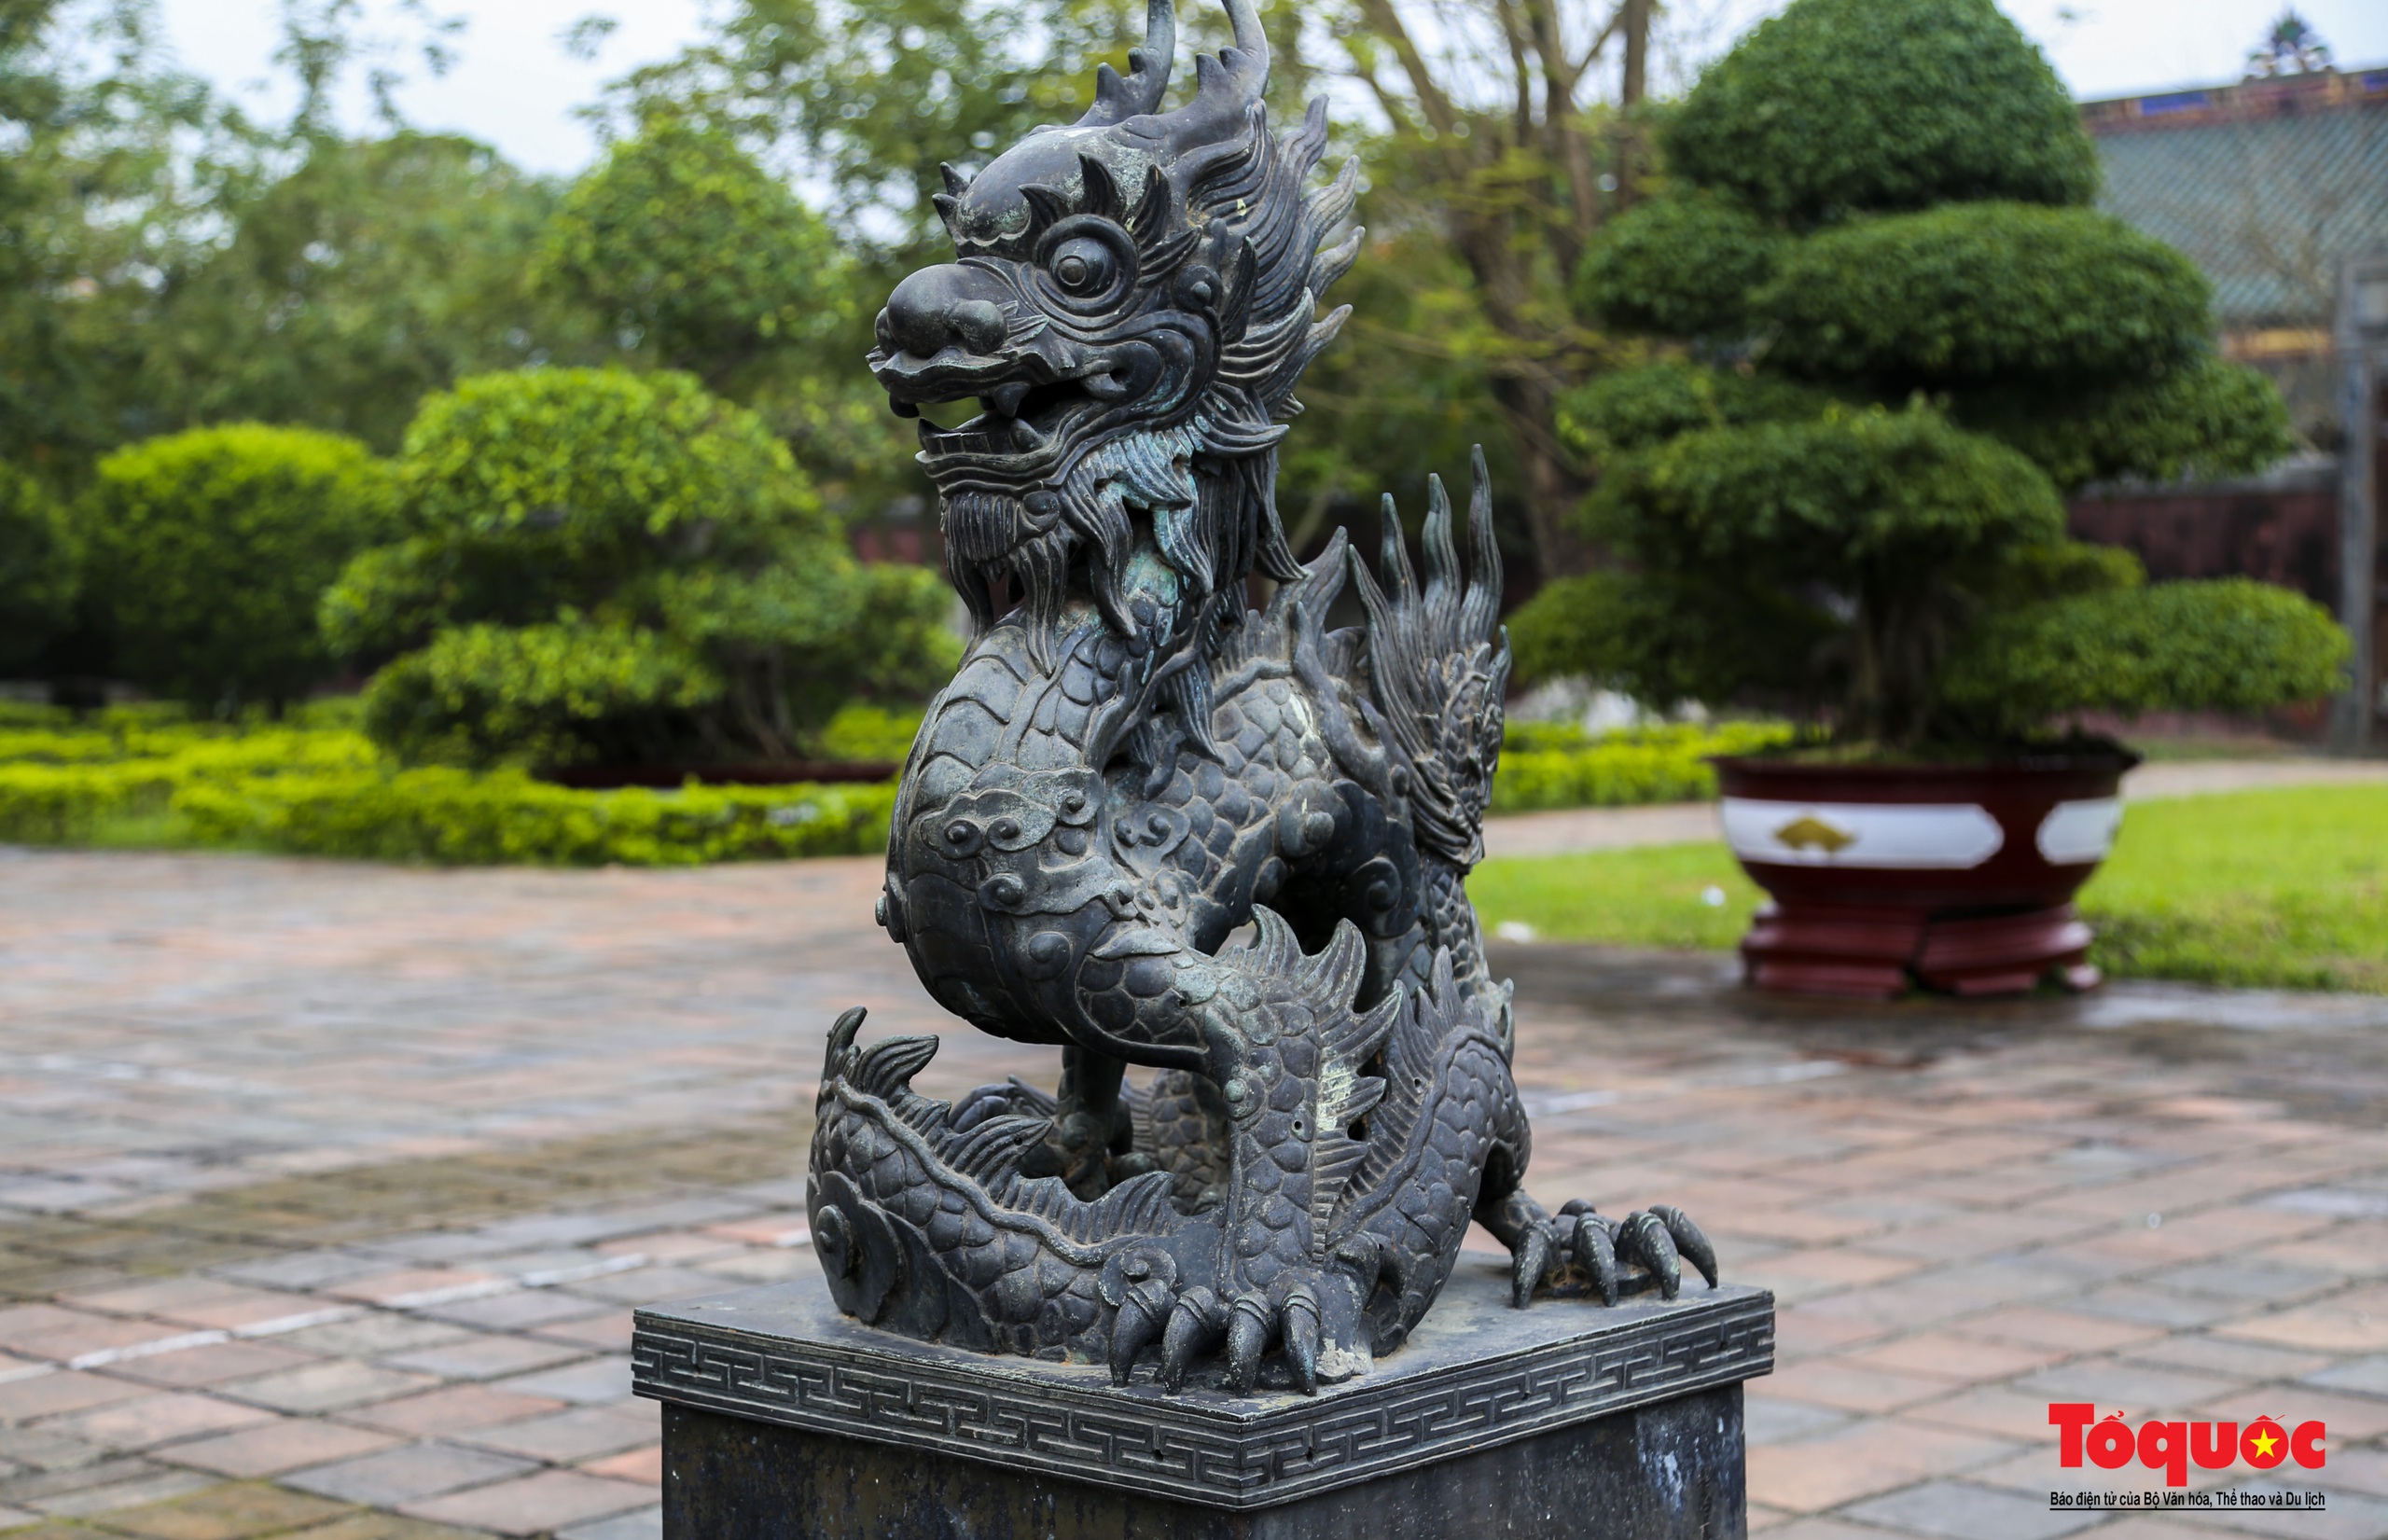 Ngắm biểu tượng rồng trên các công trình kiến trúc, cổ vật triều Nguyễn - Ảnh 9.